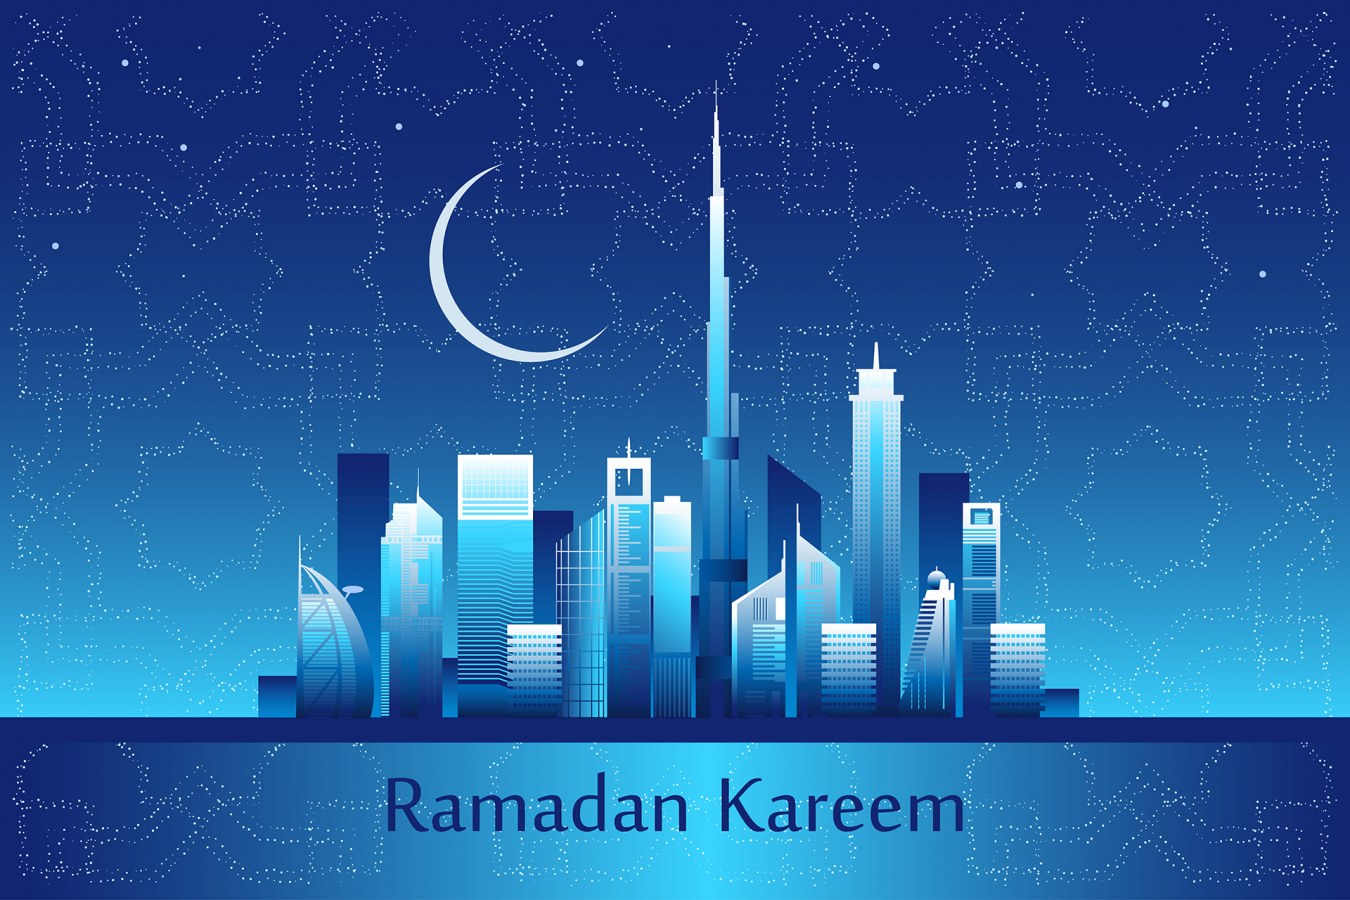 ramadan_kareem_bayut.jpg